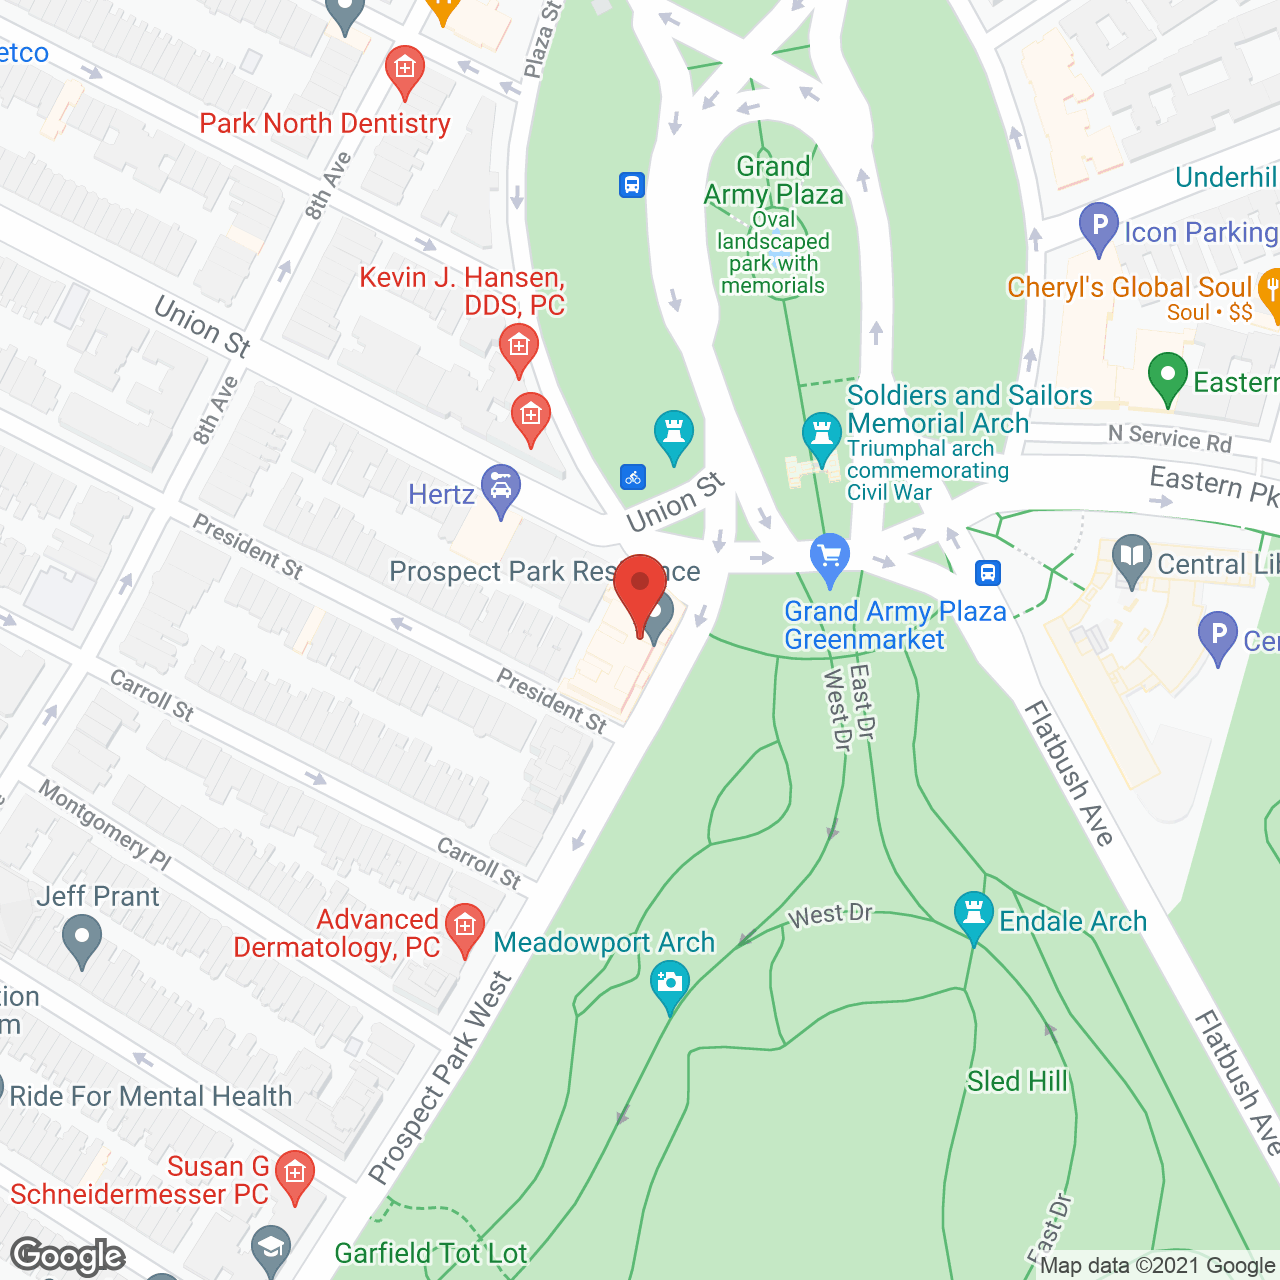 Prospect Park Residence in google map